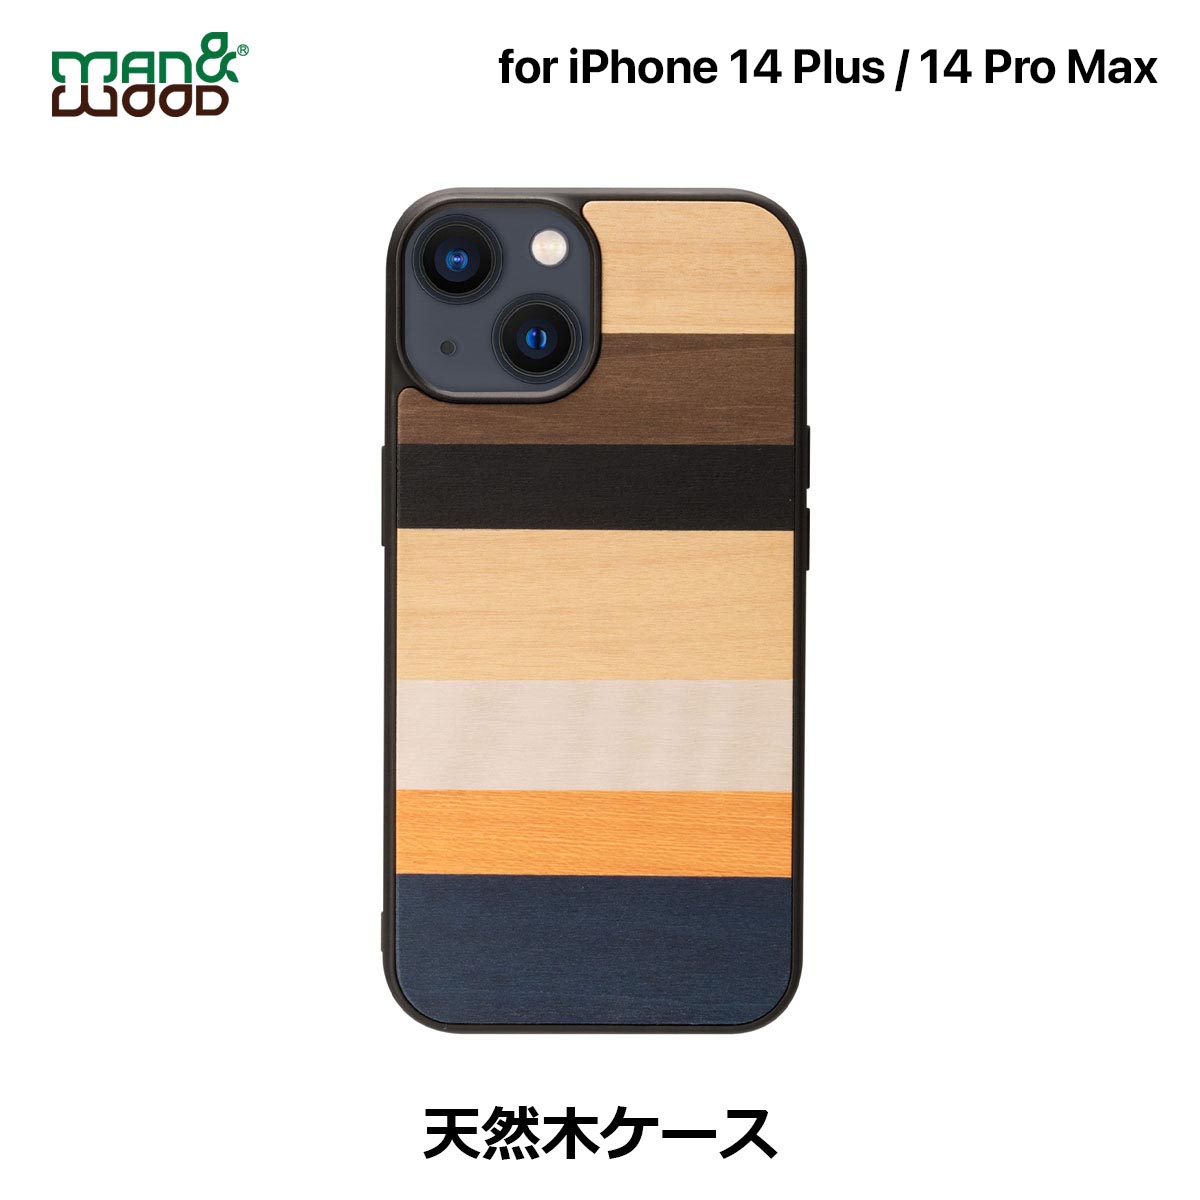 iPhone14Plus 14ProMax ケース カバー 木製 天然木 Man&Wood Province | iPhone14ProMax アイフォン14 Pro Max 木目 ウッド ナチュラル 背面カバー TPU ハイブリッド おしゃれ 大人 かっこいい スリム ストラップホール付き ワイヤレス充電対応 1